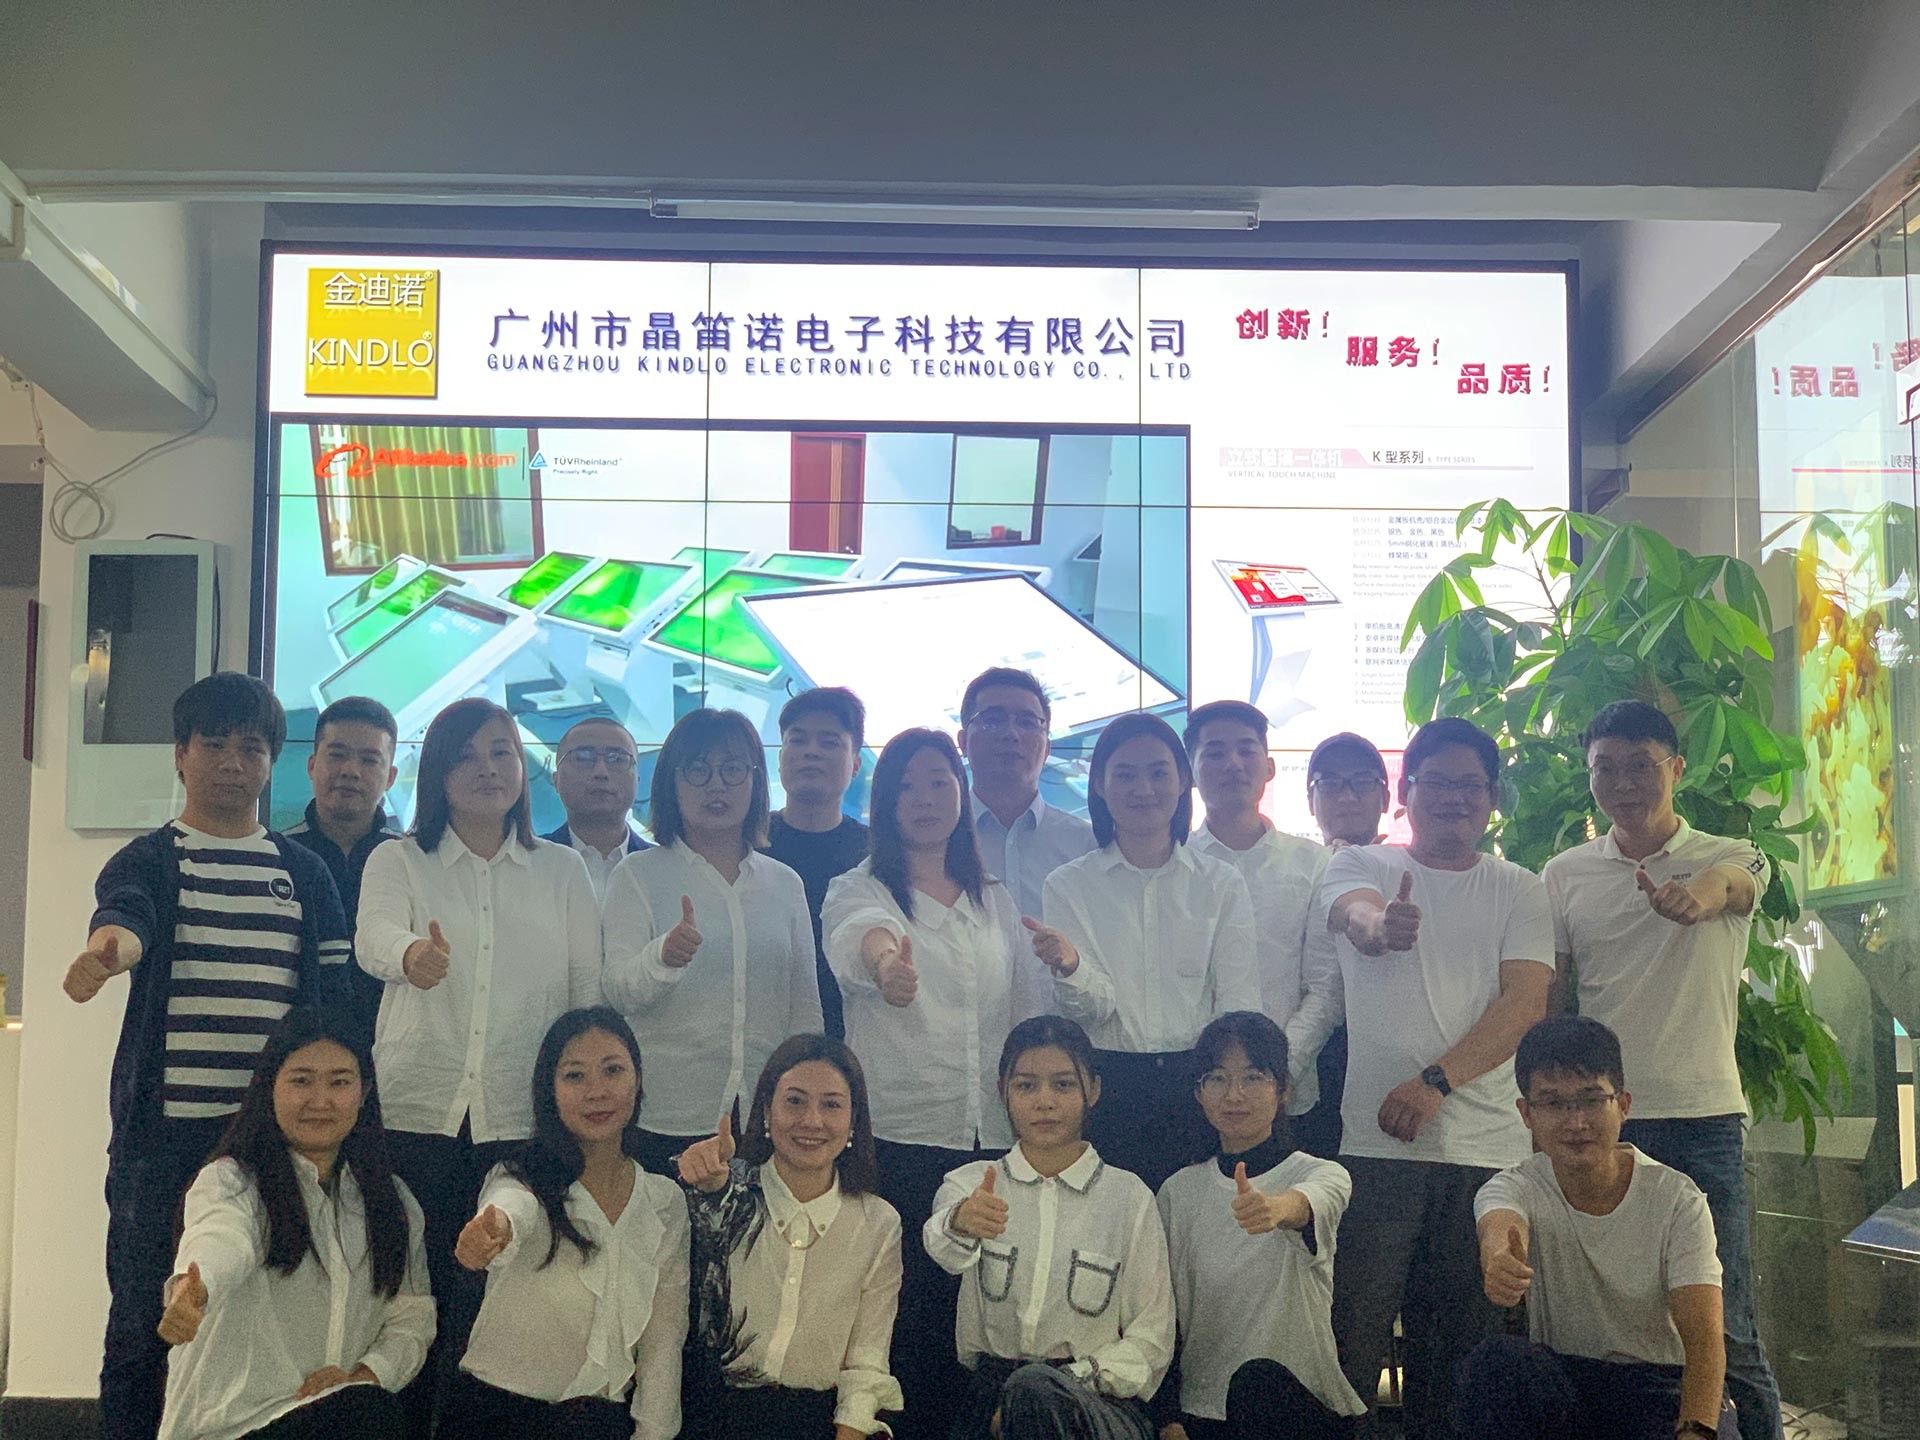 ประเทศจีน Guangzhou Jingdinuo Electronic Technology Co., Ltd.